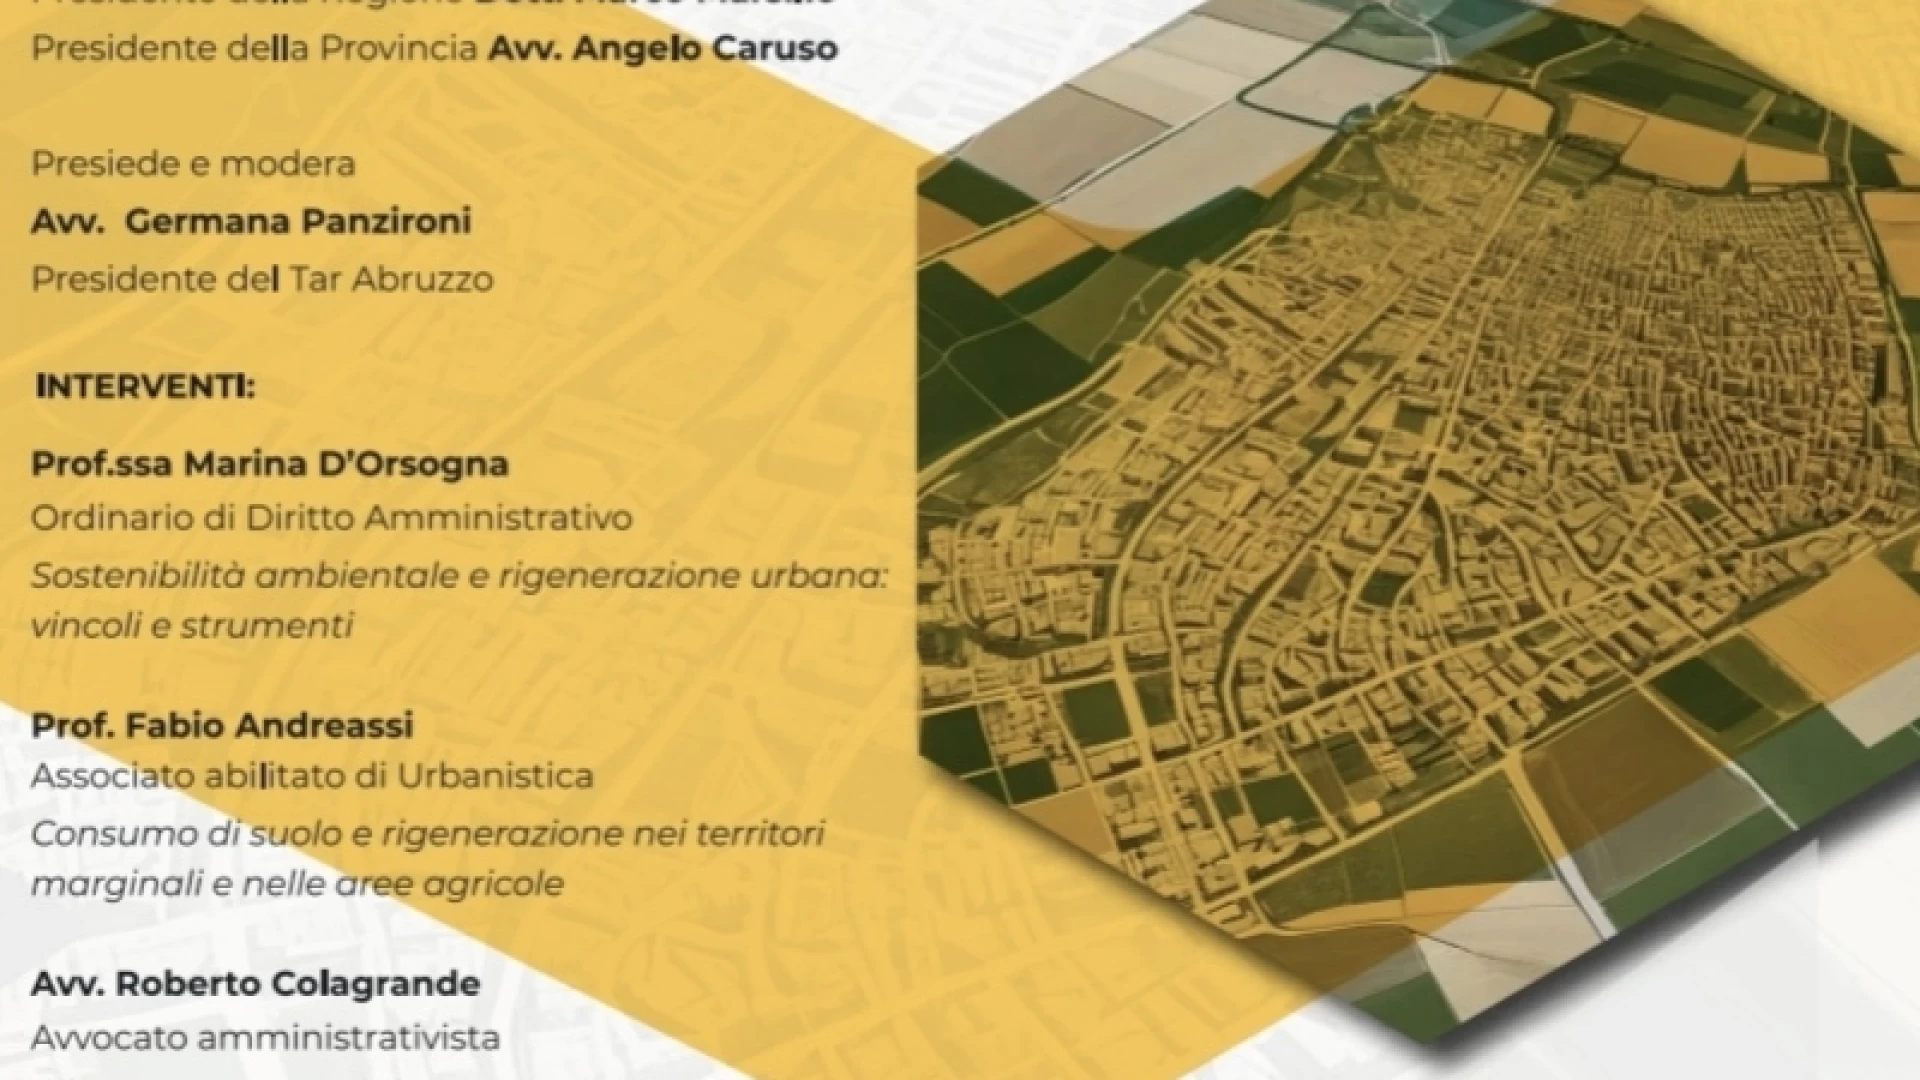 Provincia dell'Aquila convegno sulla nuova legge urbanistica regionale. L'evento in programma il prossimo 21 maggio.